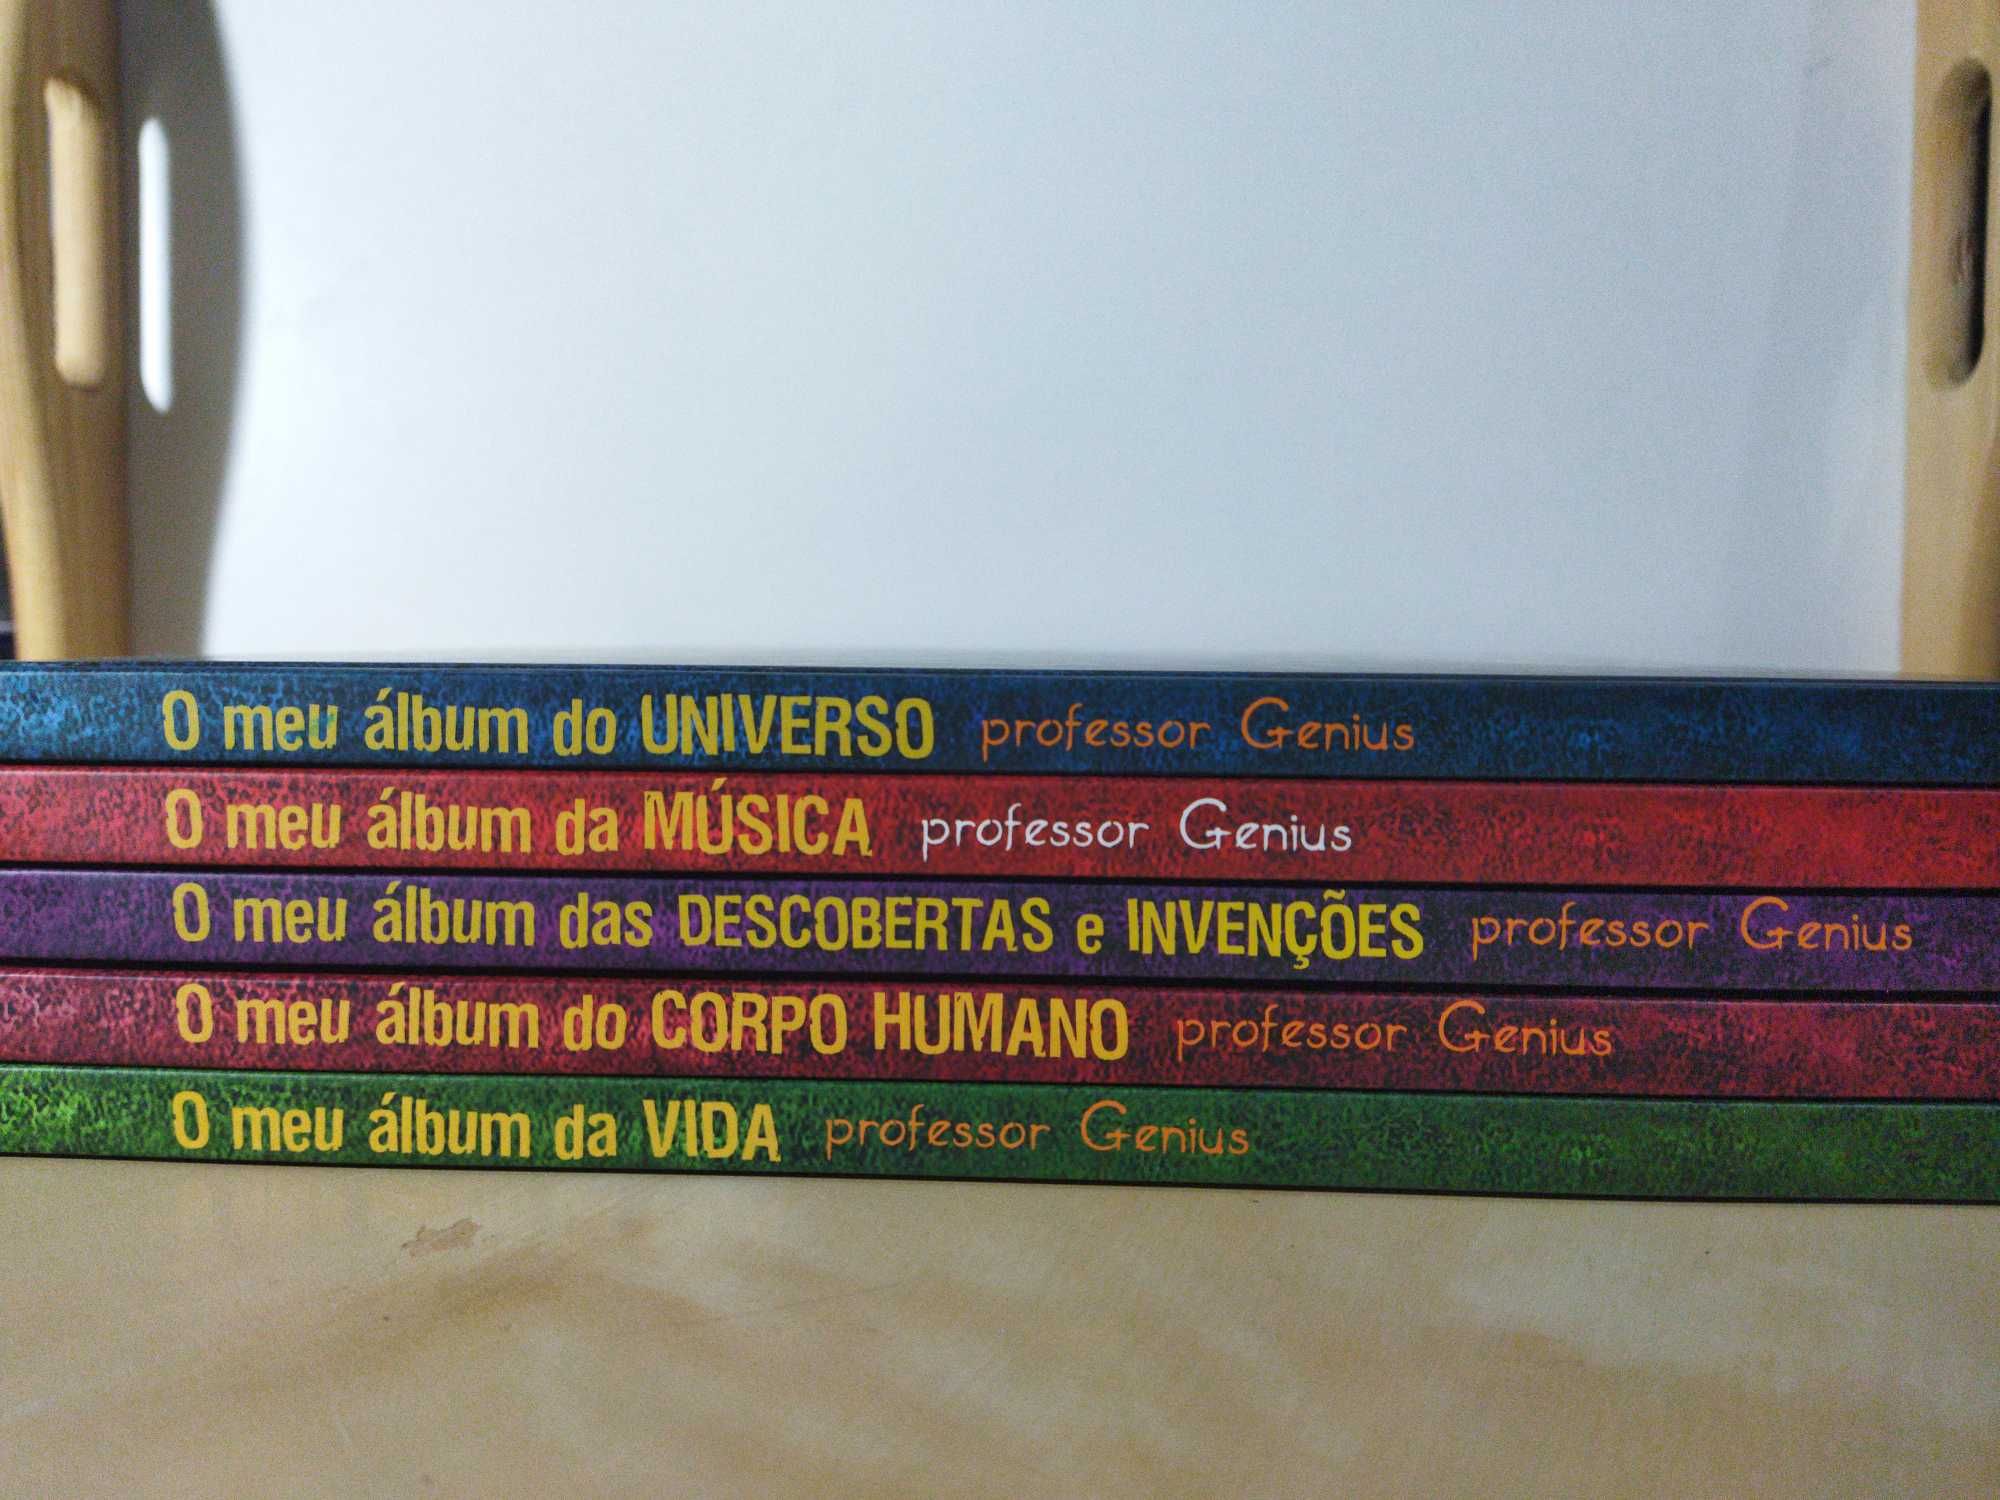 Coleção "o meu álbum" (5 volumes)